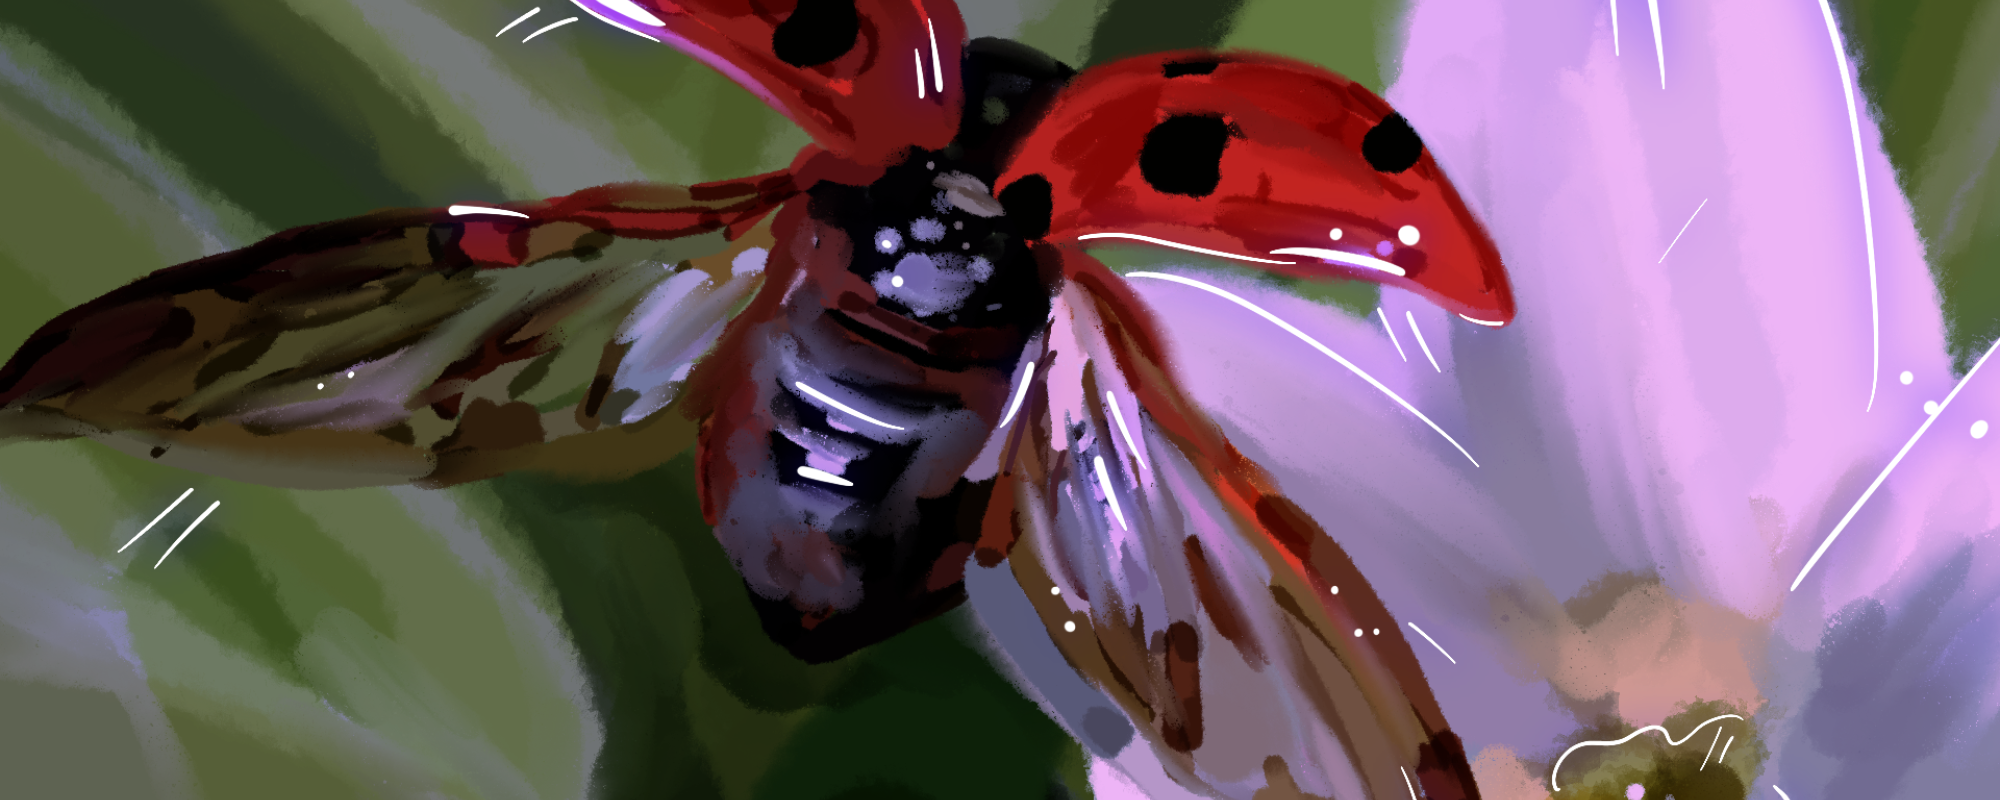 image of a ladybug taking flight